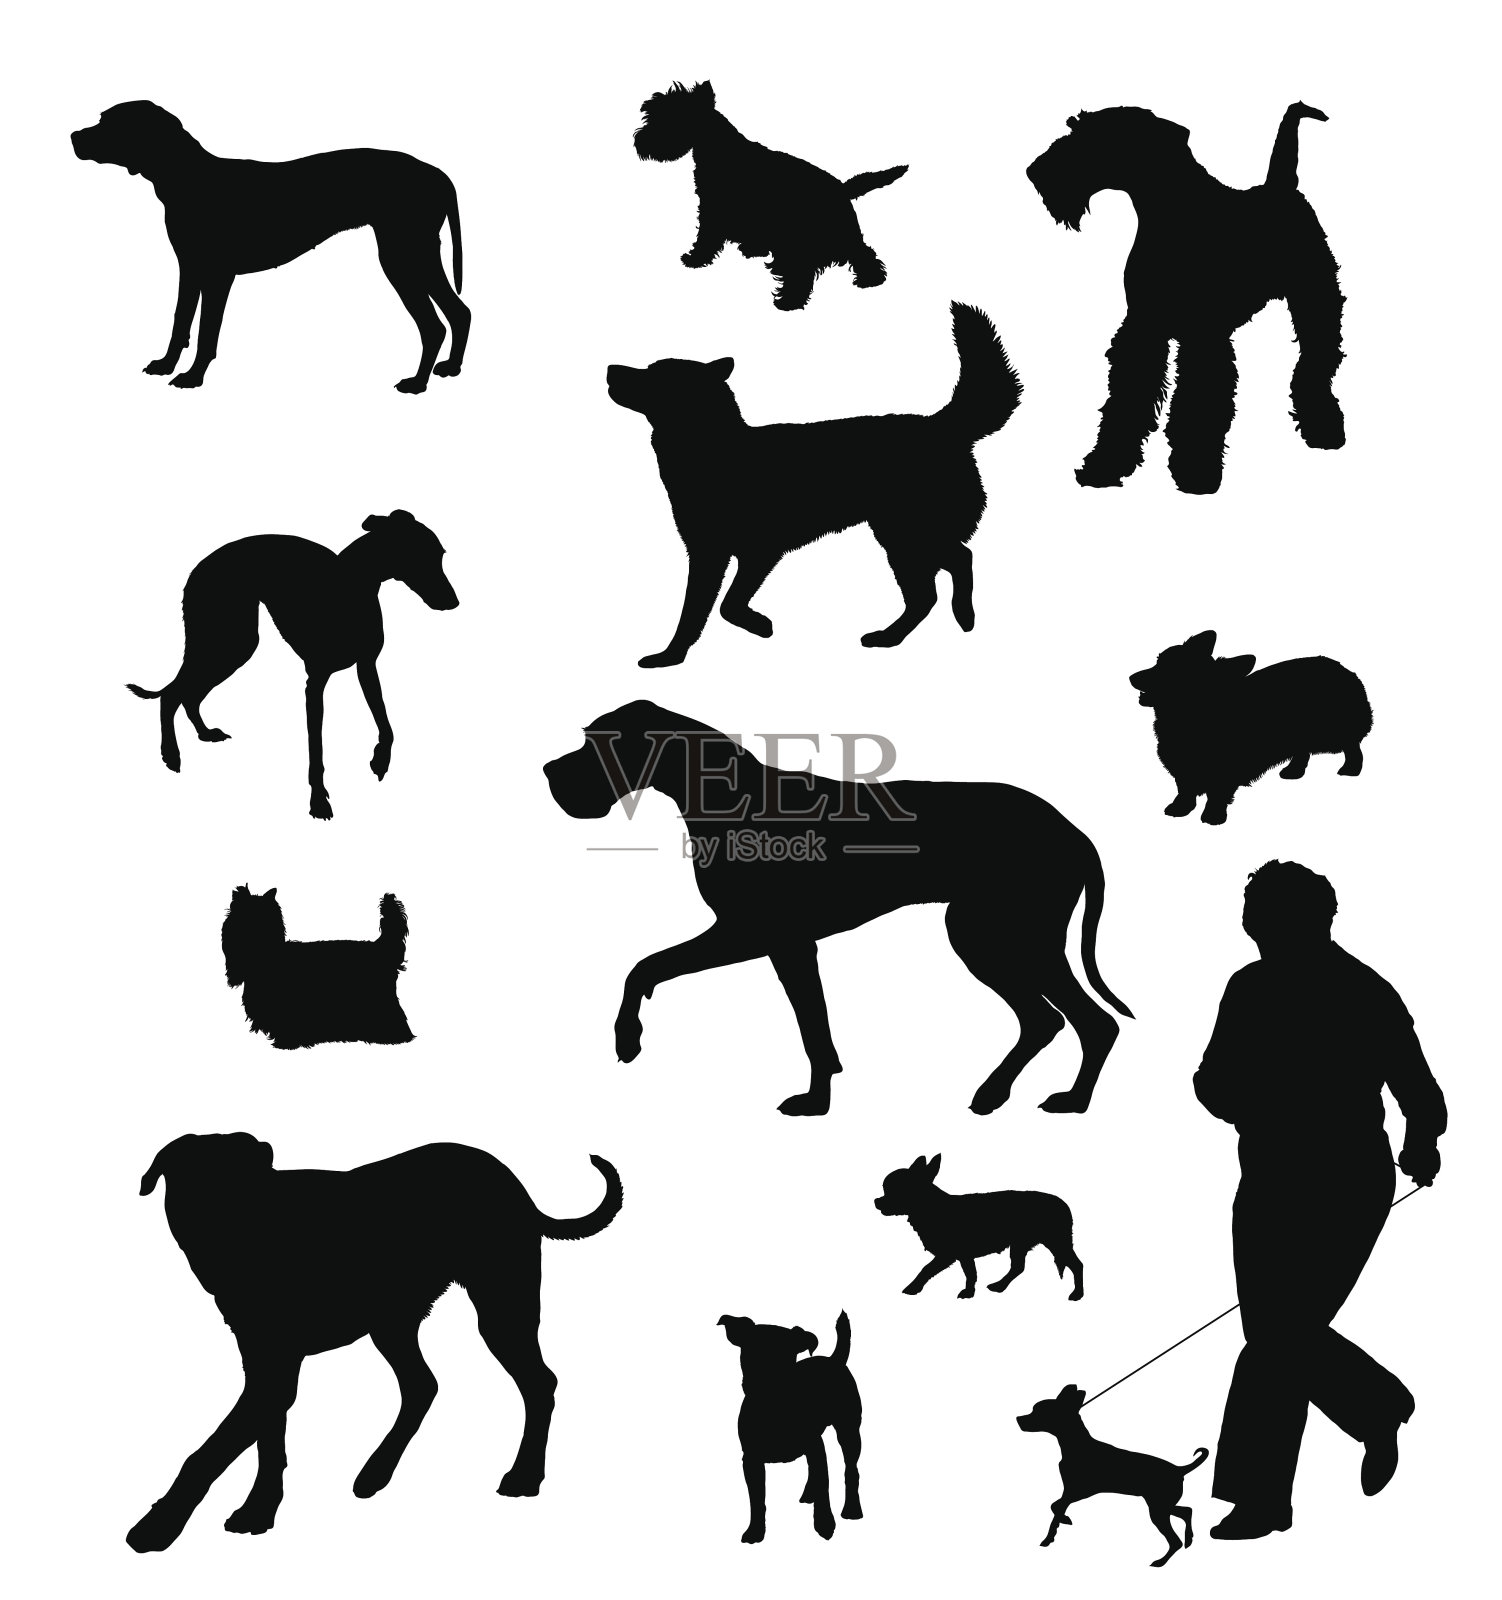 不同大小和品种的狗的轮廓插画图片素材